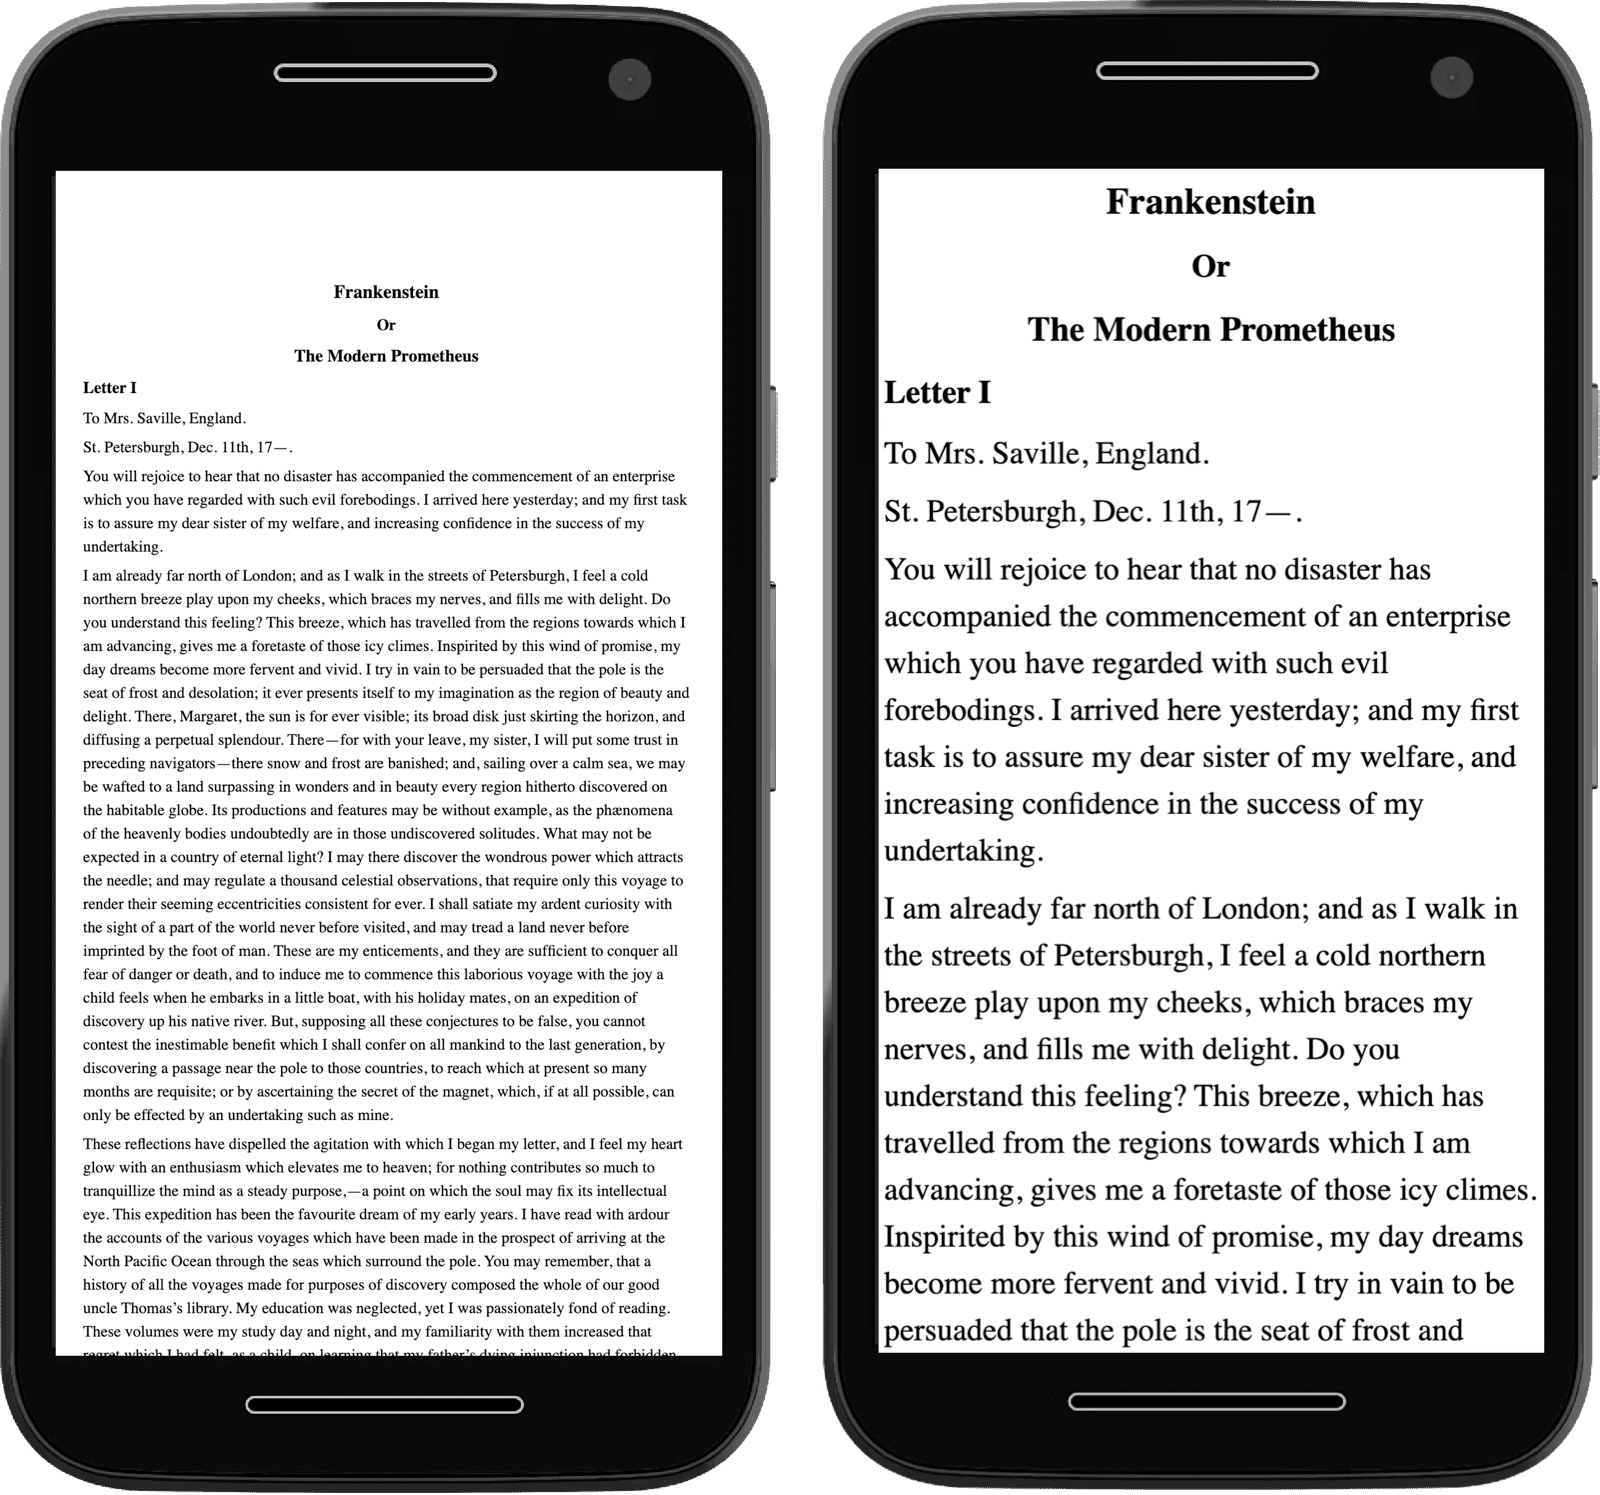 תמונות של שני טלפונים ניידים שמכילים טקסט, כשאחד מהם מוקטן מפני שהמטא תג לא היה במקום.